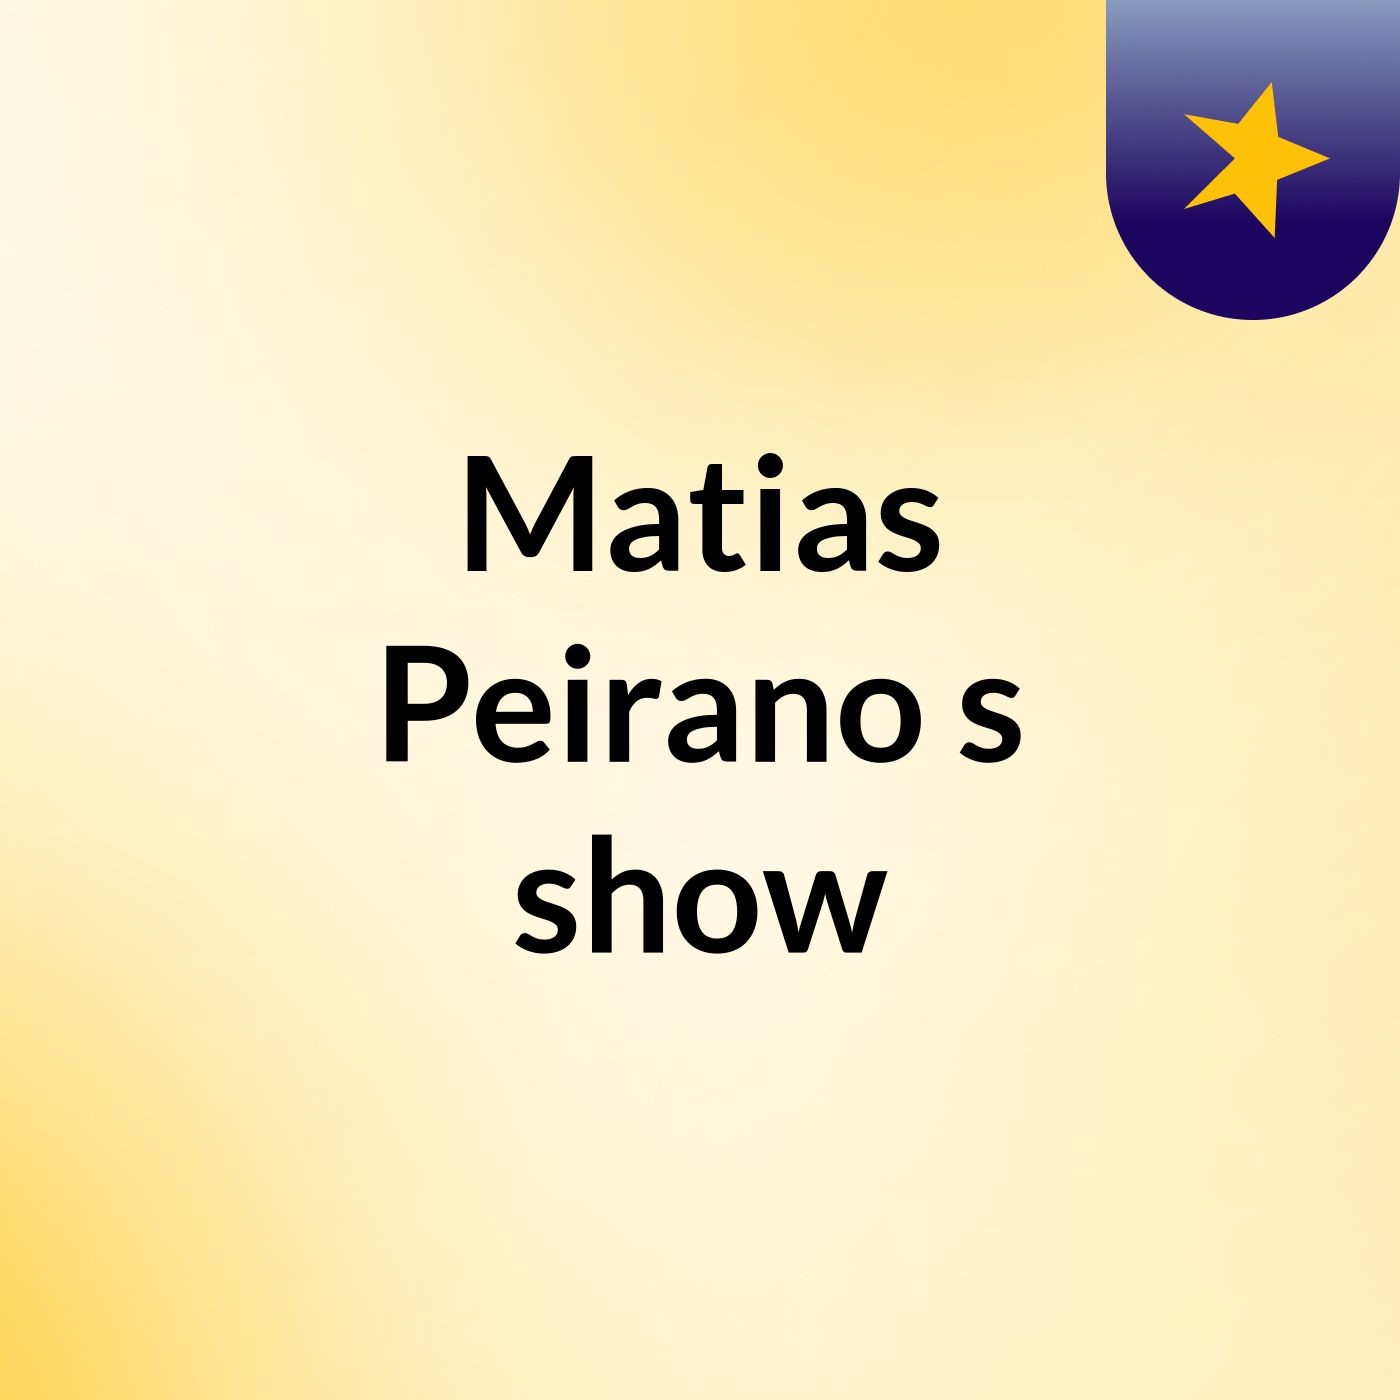 Matias Peirano's show